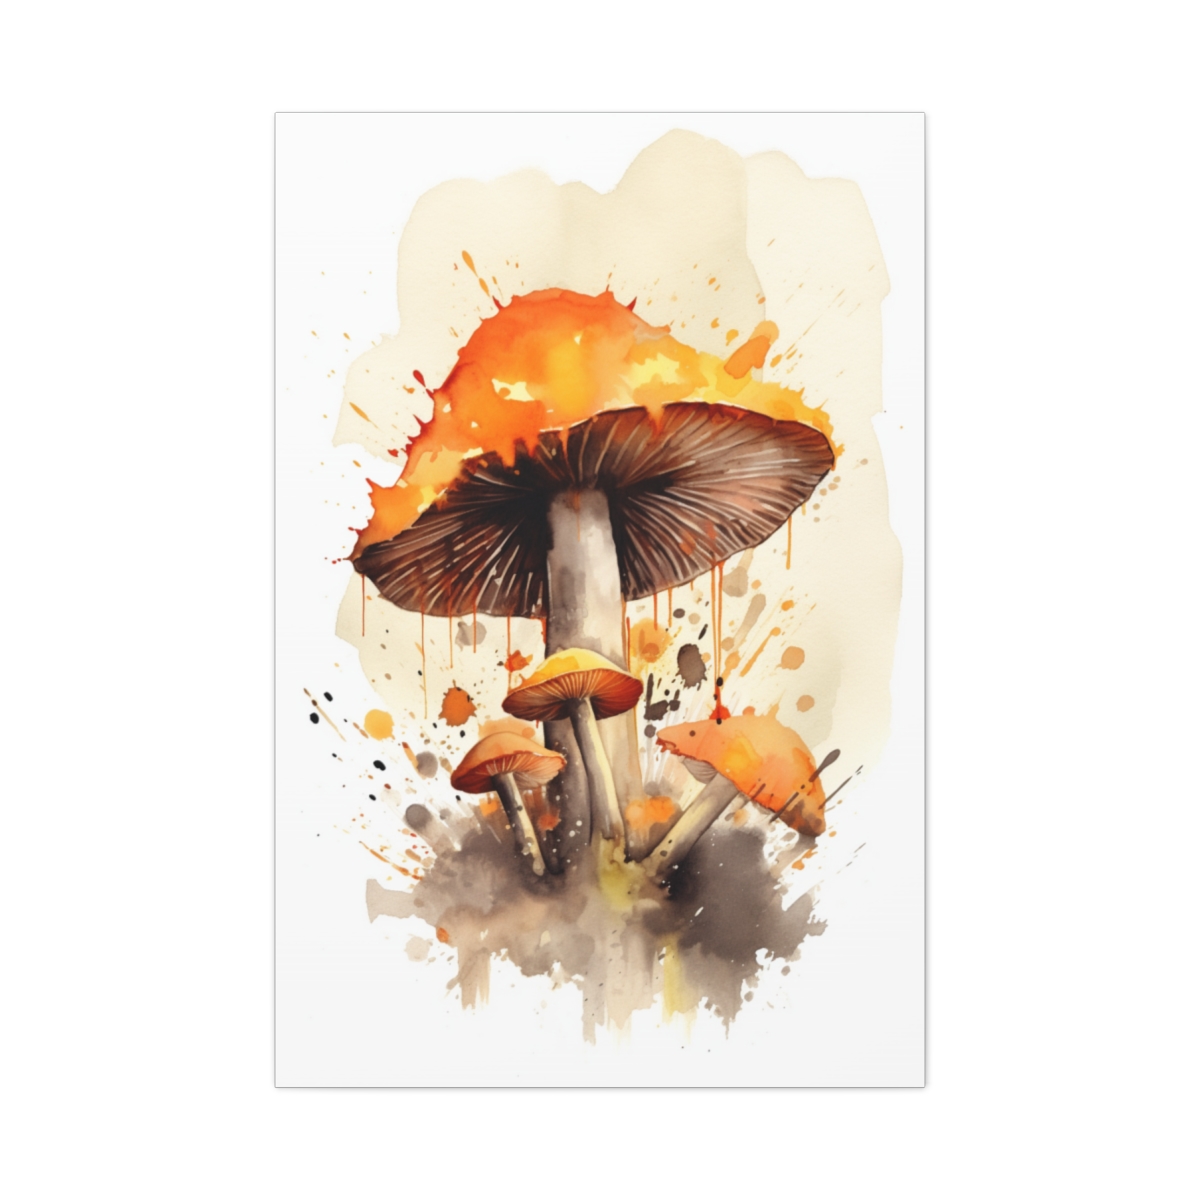 Mushroom Art Canvas Print: Salem's Shroom